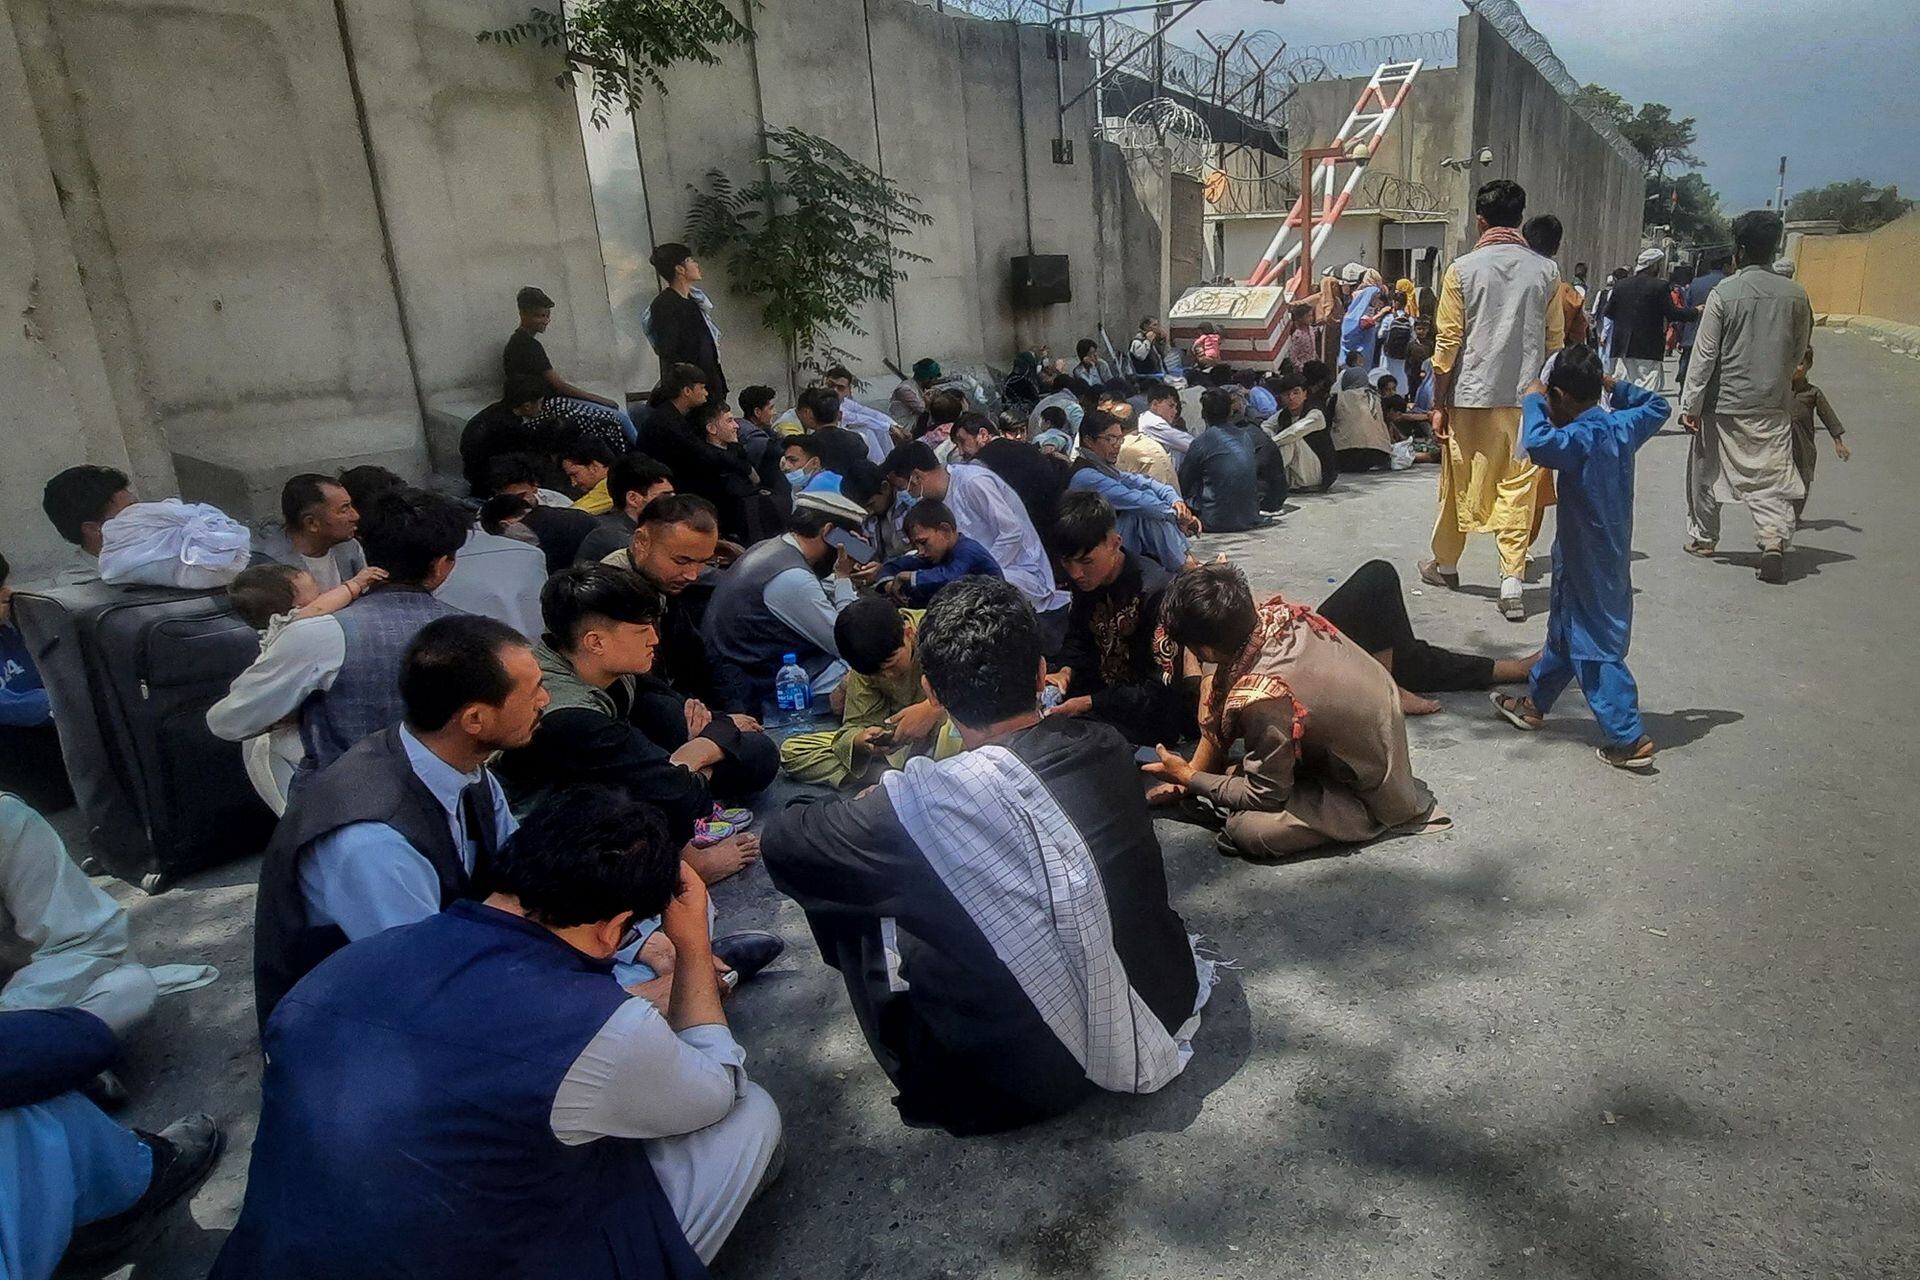 Los afganos intentan encontrar la manera de huir de su país tras la llegada de los talibanes, mientras algunos van hasta las fronteras otros se acercan a las embajada para conseguir visas